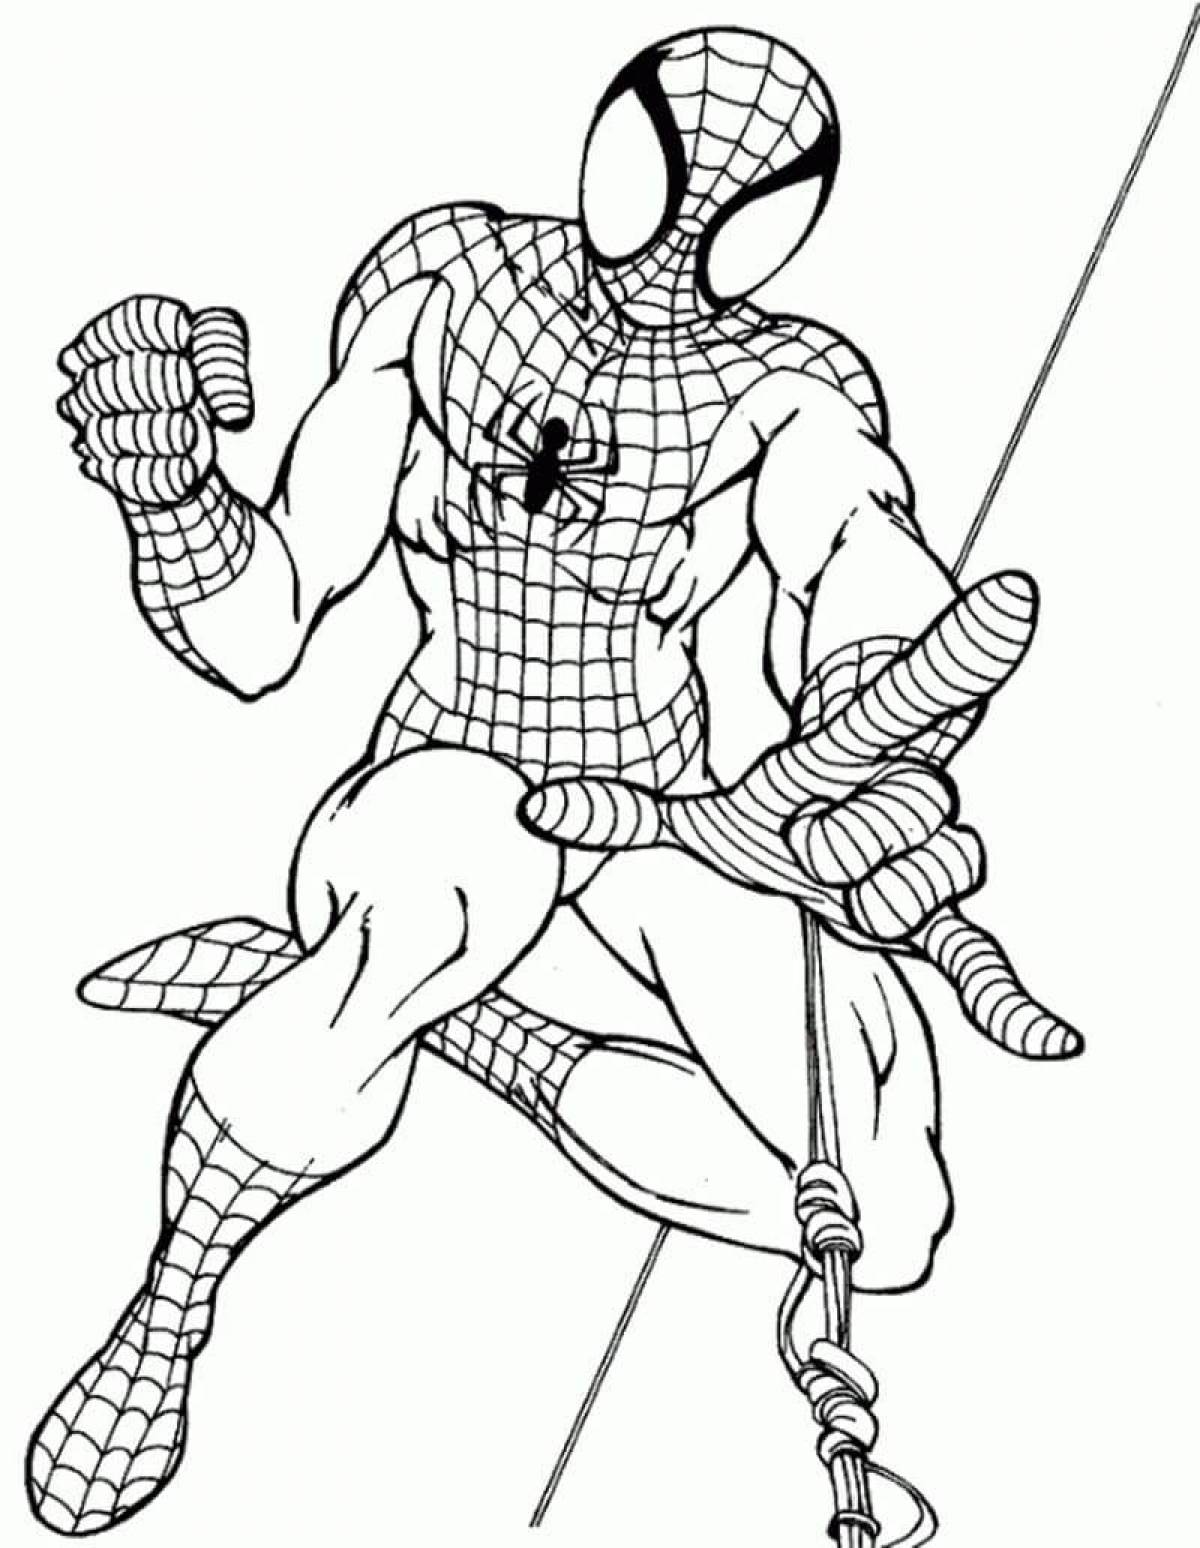 Искусно детализированная страница раскраски человека-паука